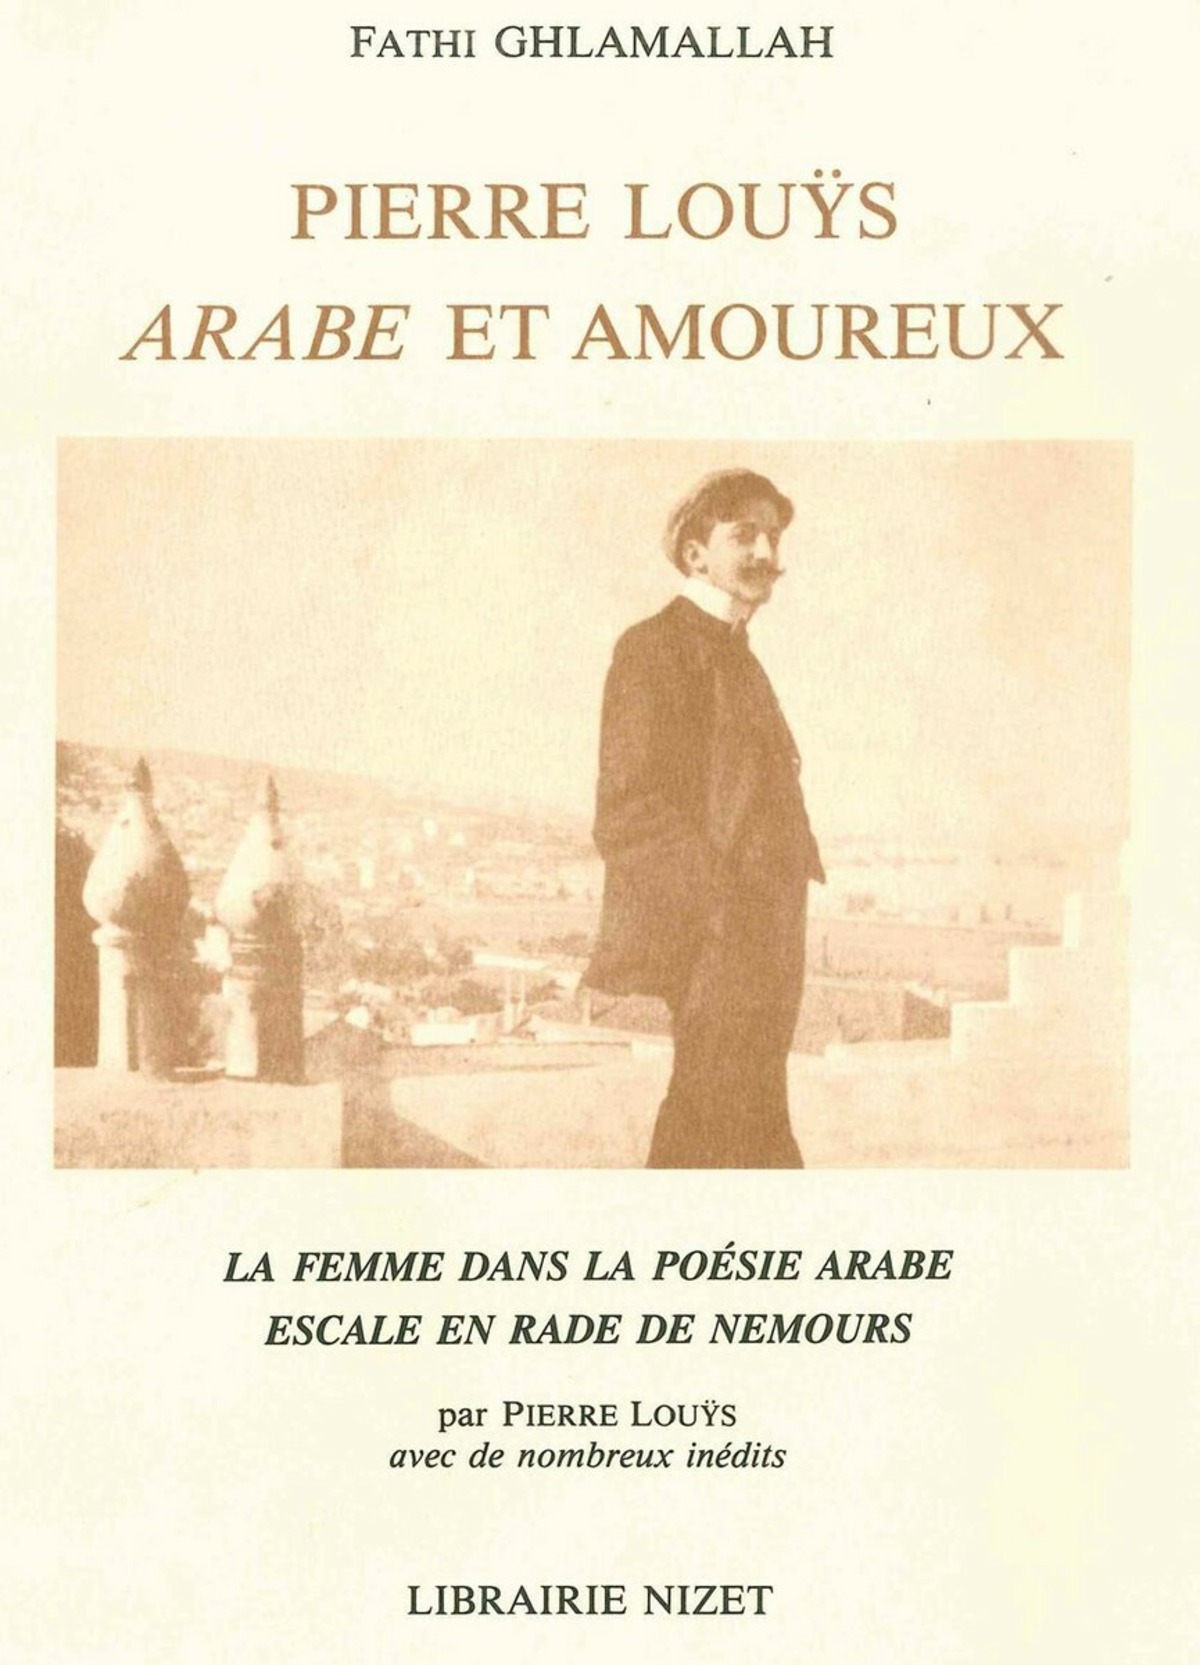 Pierre Louÿs, Arabe et amoureux